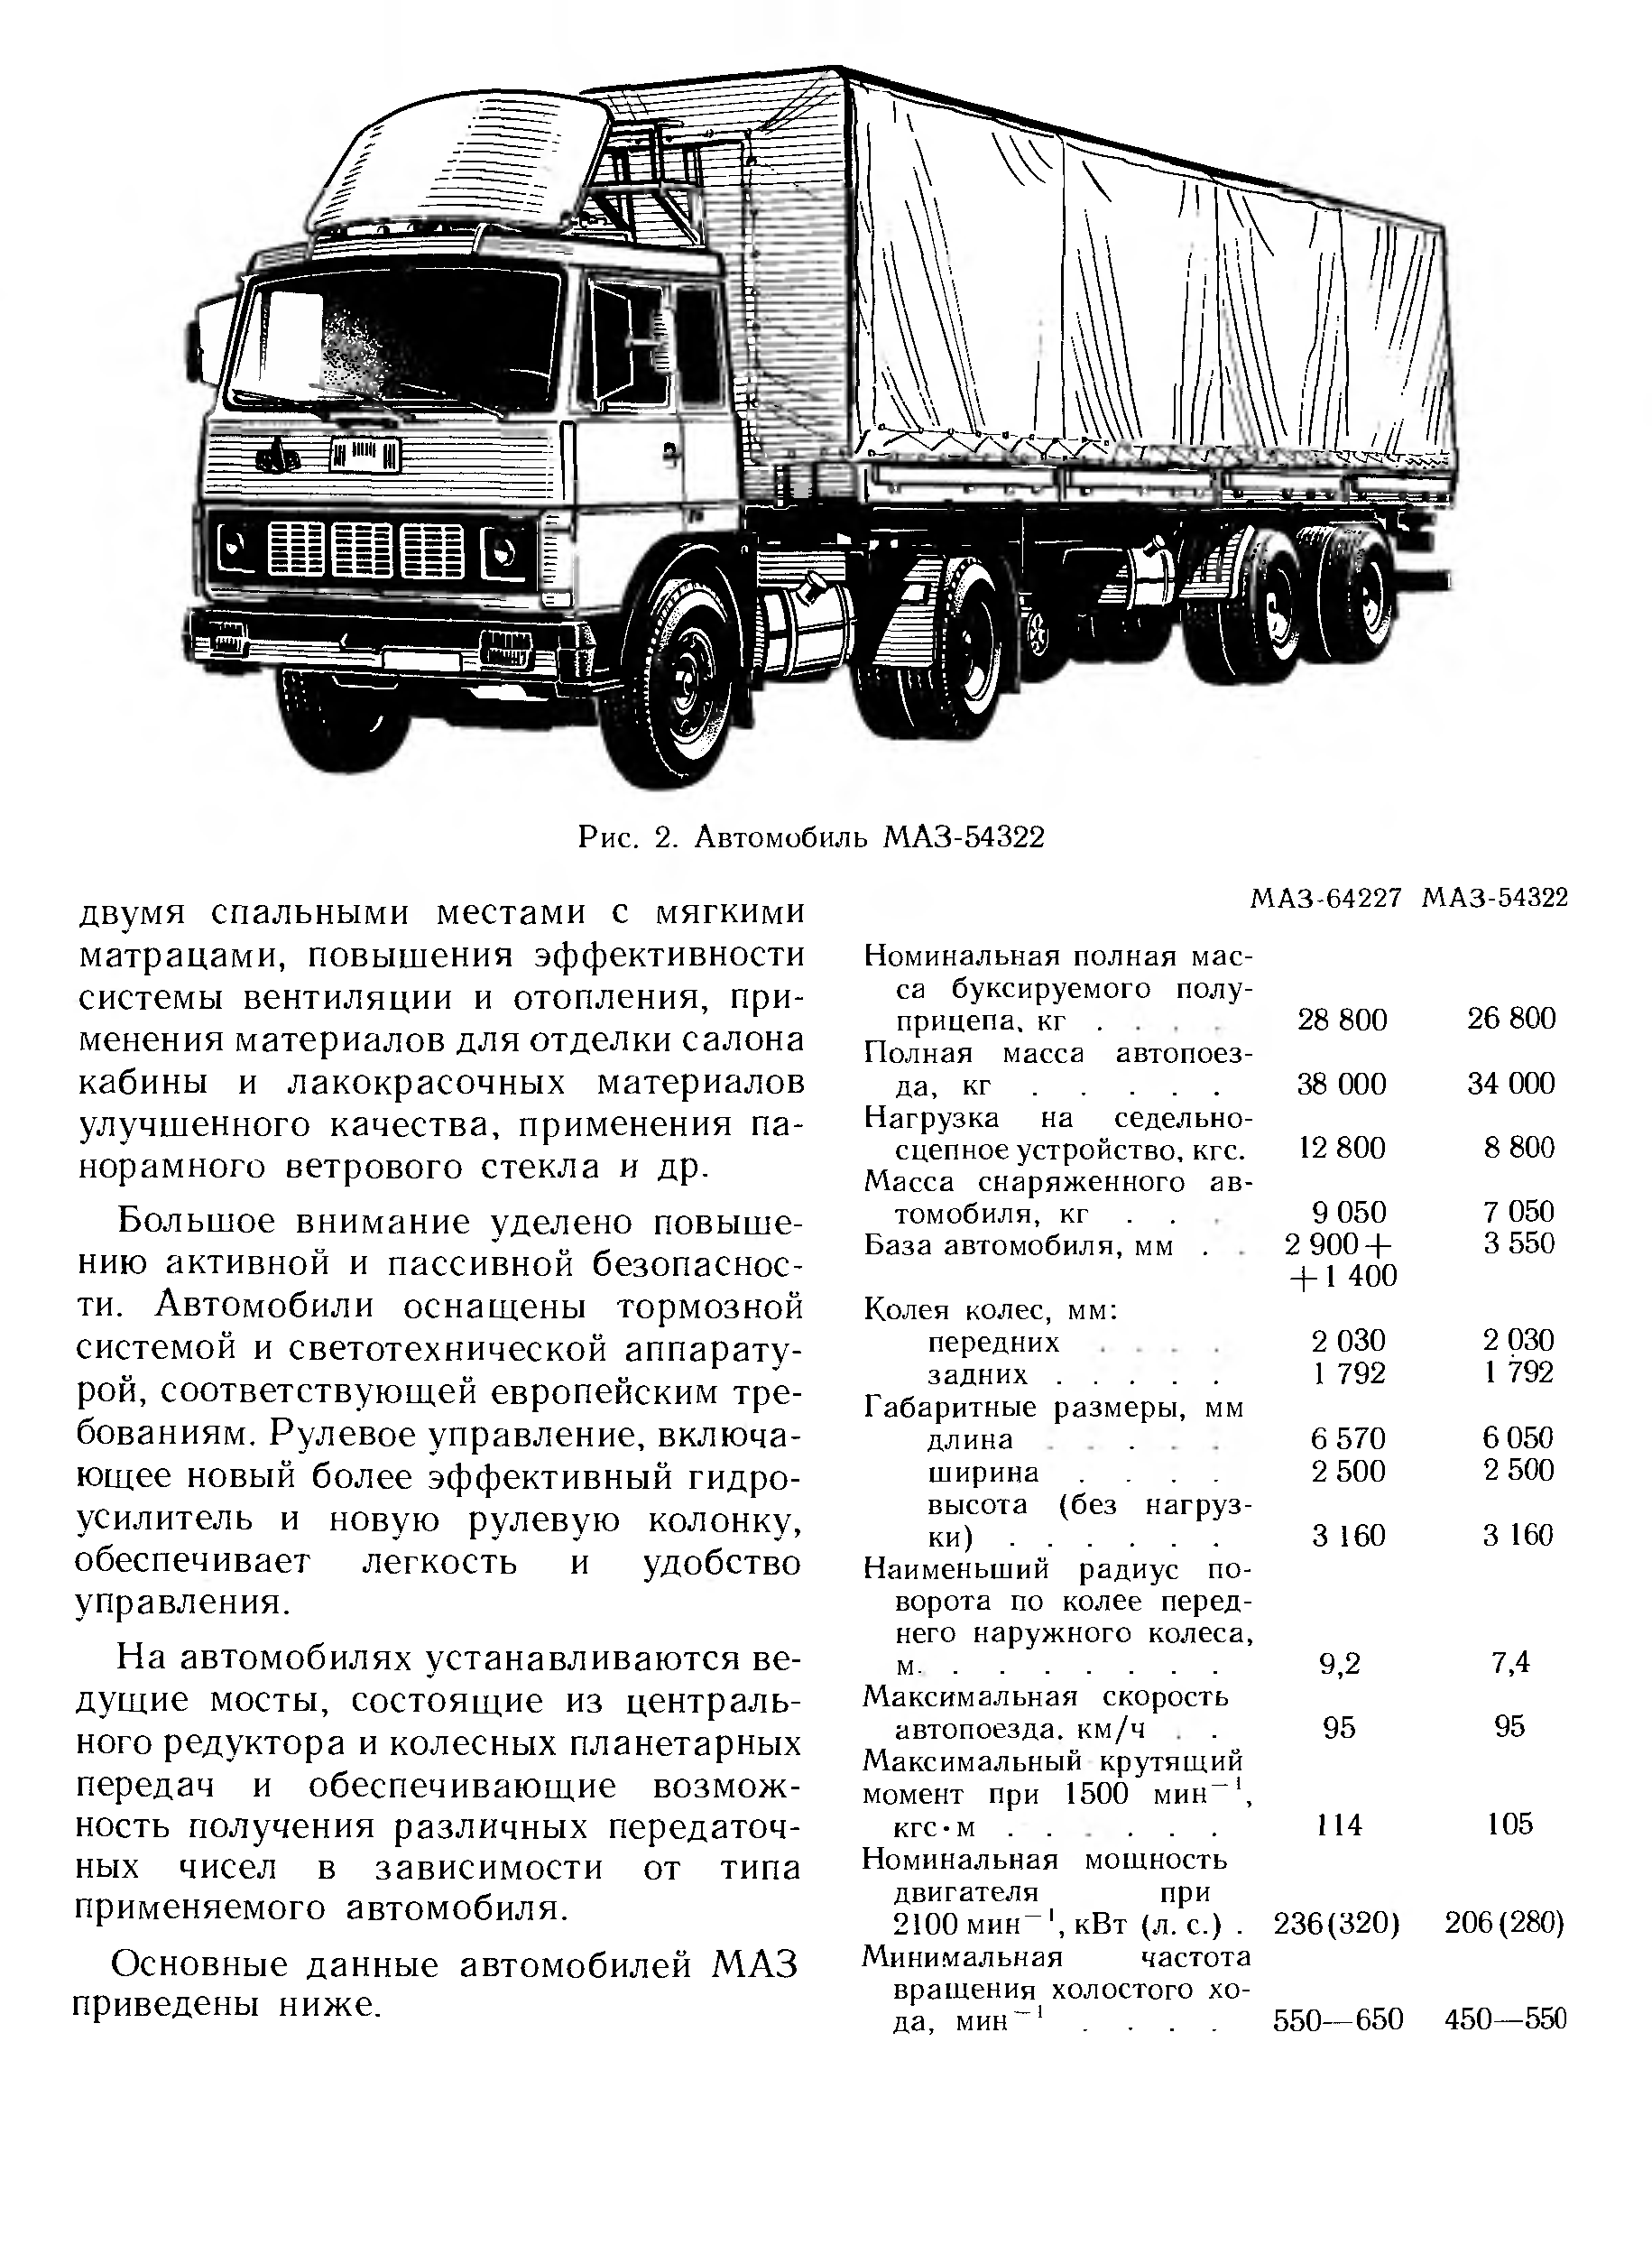 Масштабные модели грузовиков семейства маз-500 из серии «наш автопром»